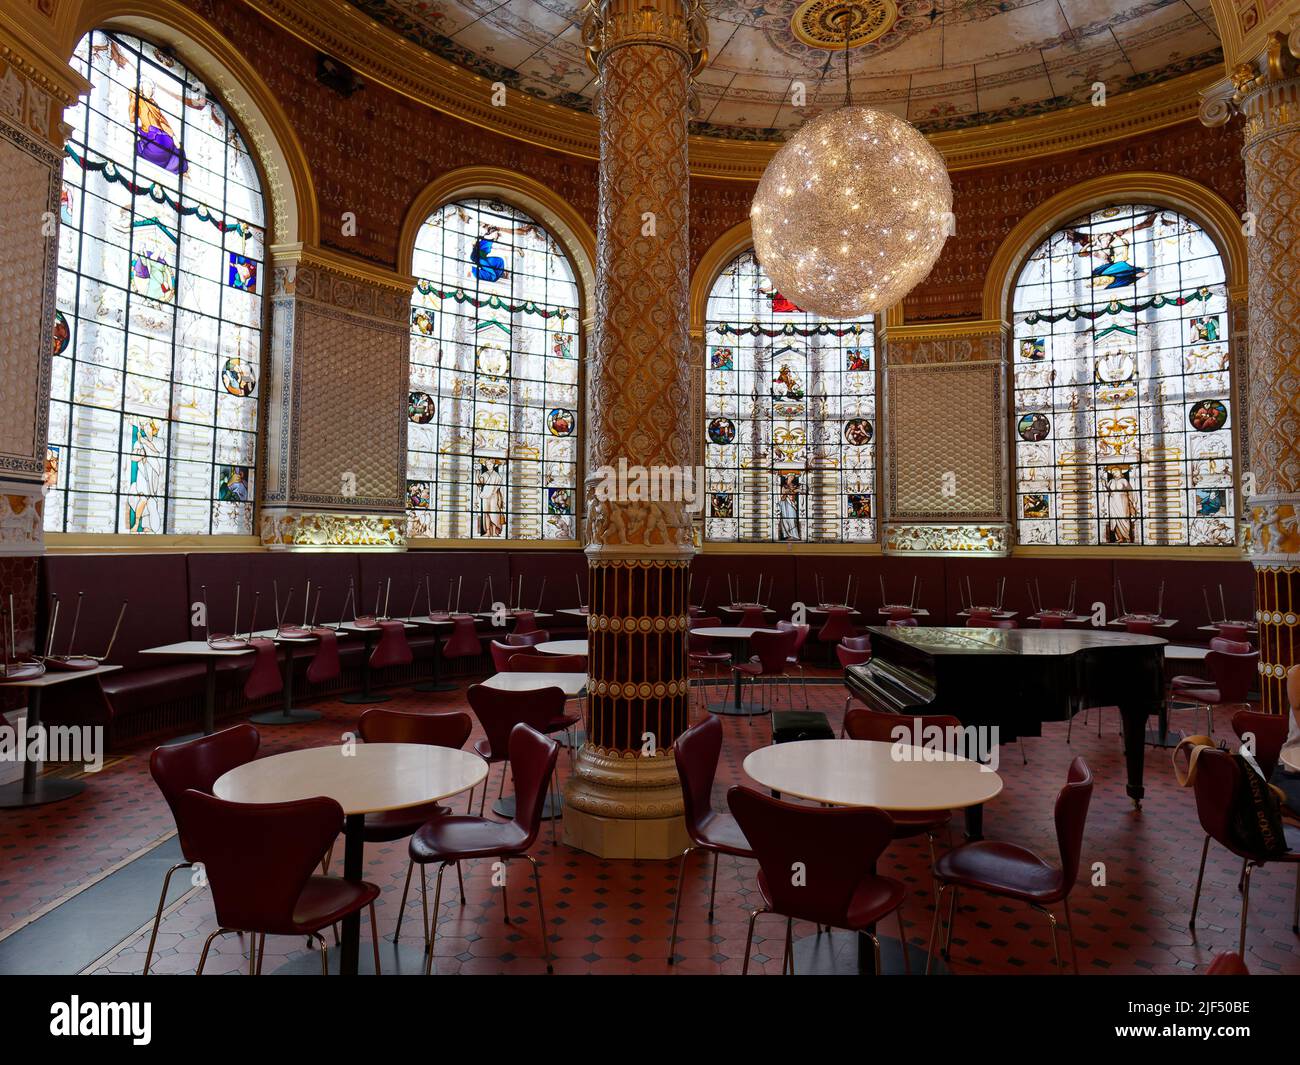 London, Greater London, England, Juni 15 2022: Das historische Café des Victoria and Albert Museums mit einem üppigen Interieur und Buntglasfenstern. Stockfoto